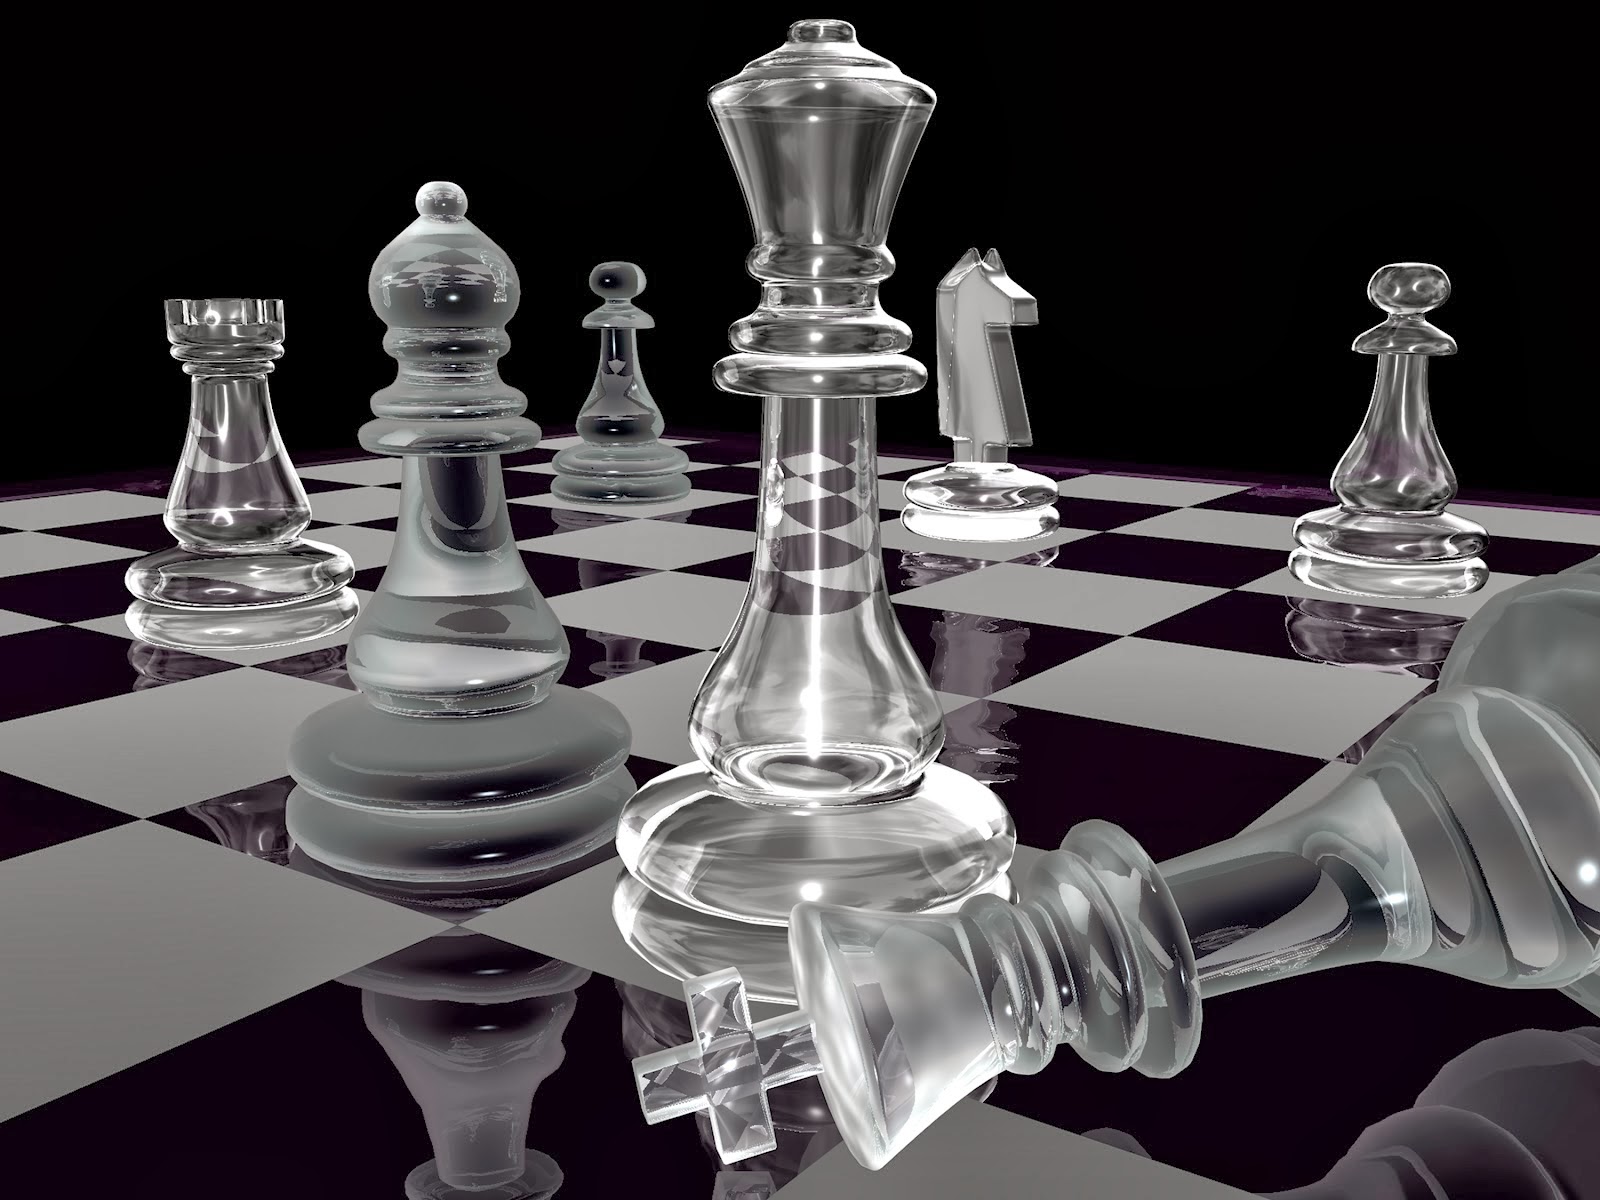 4 Bermain permainan strategi Permainan strategi seperti catur monopoli atau game komputer lainnya akan menggunakan otak kanan yang dapat membantu orang